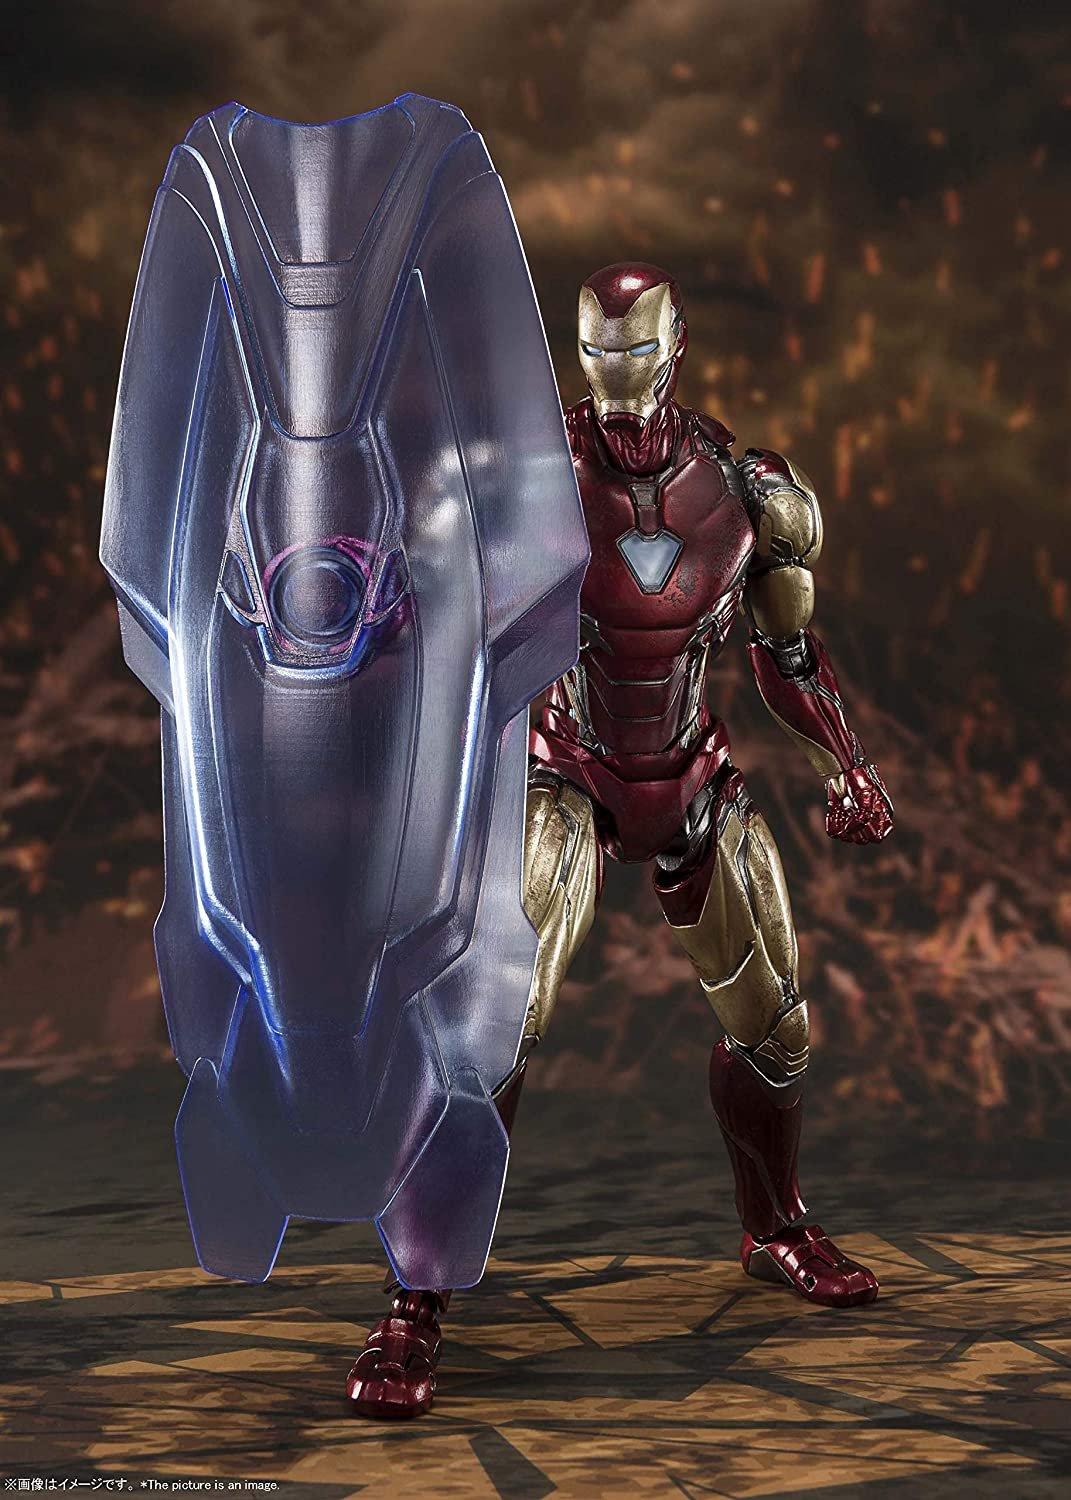 list item 2 of 4 Avengers: Endgame Iron Man Mark 85 Final Battle Edition S.H. Figuarts Action Figure